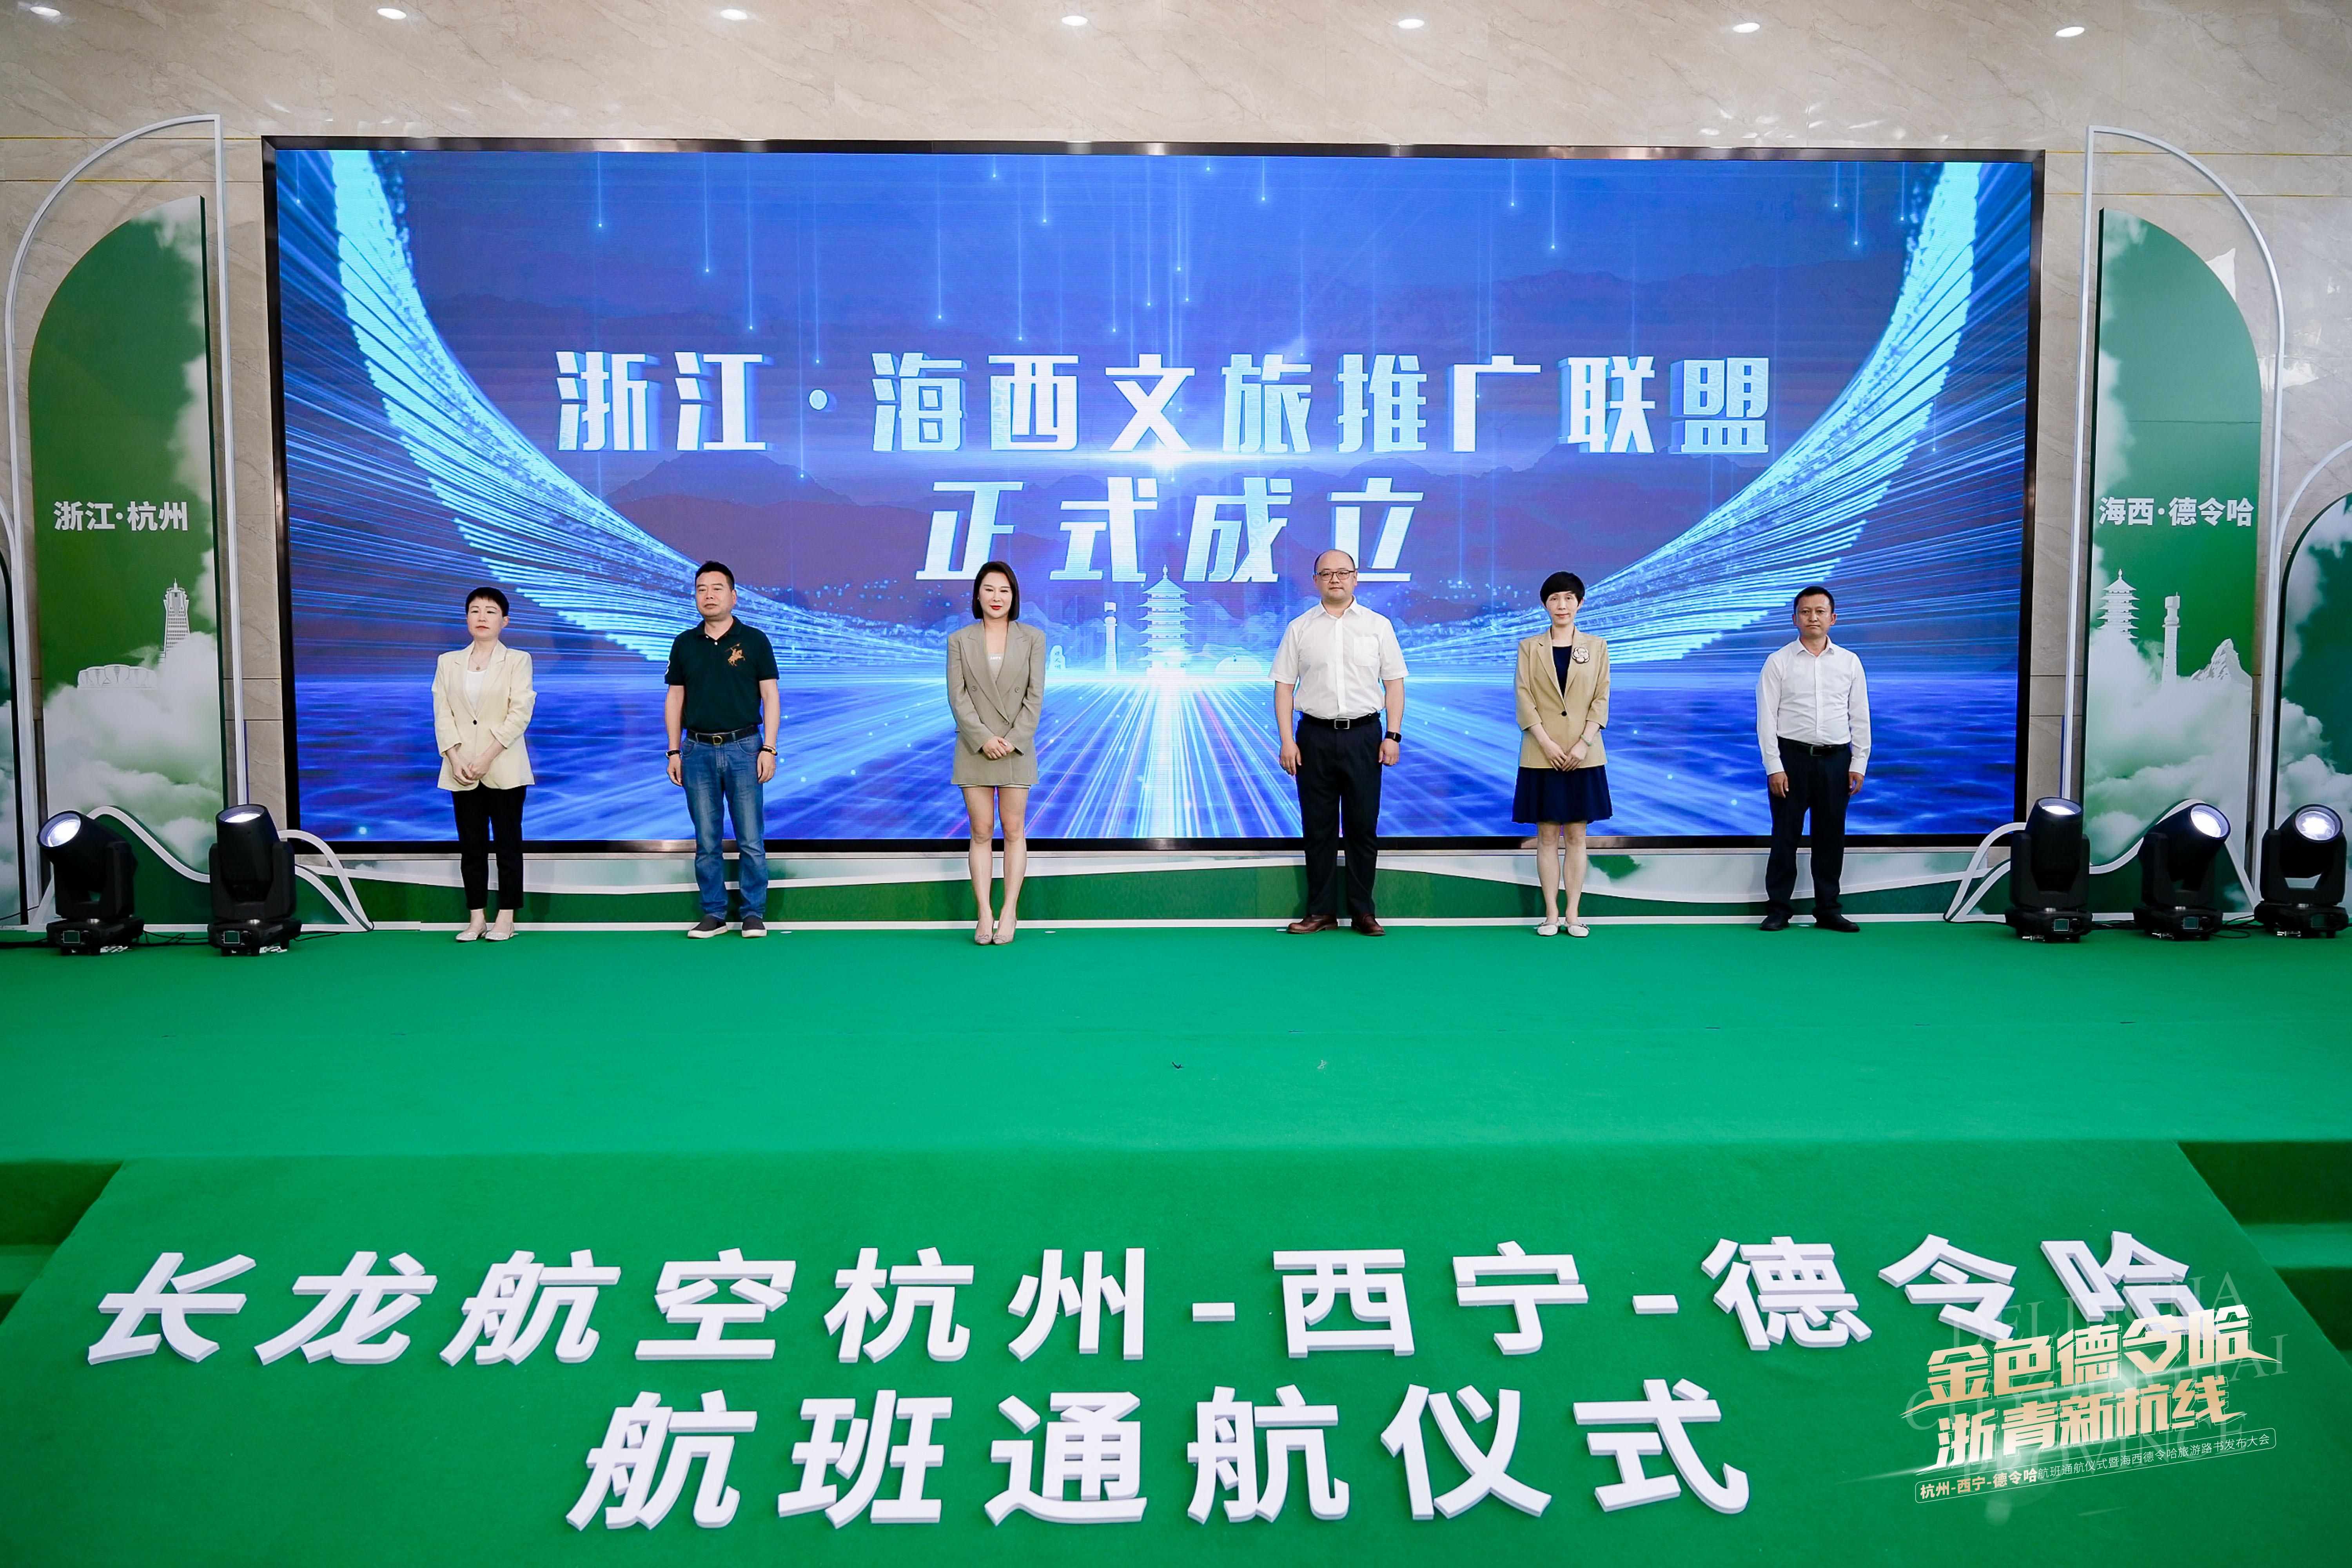 杭州-西宁-德令哈航班通航仪式在杭举行，明日将首航